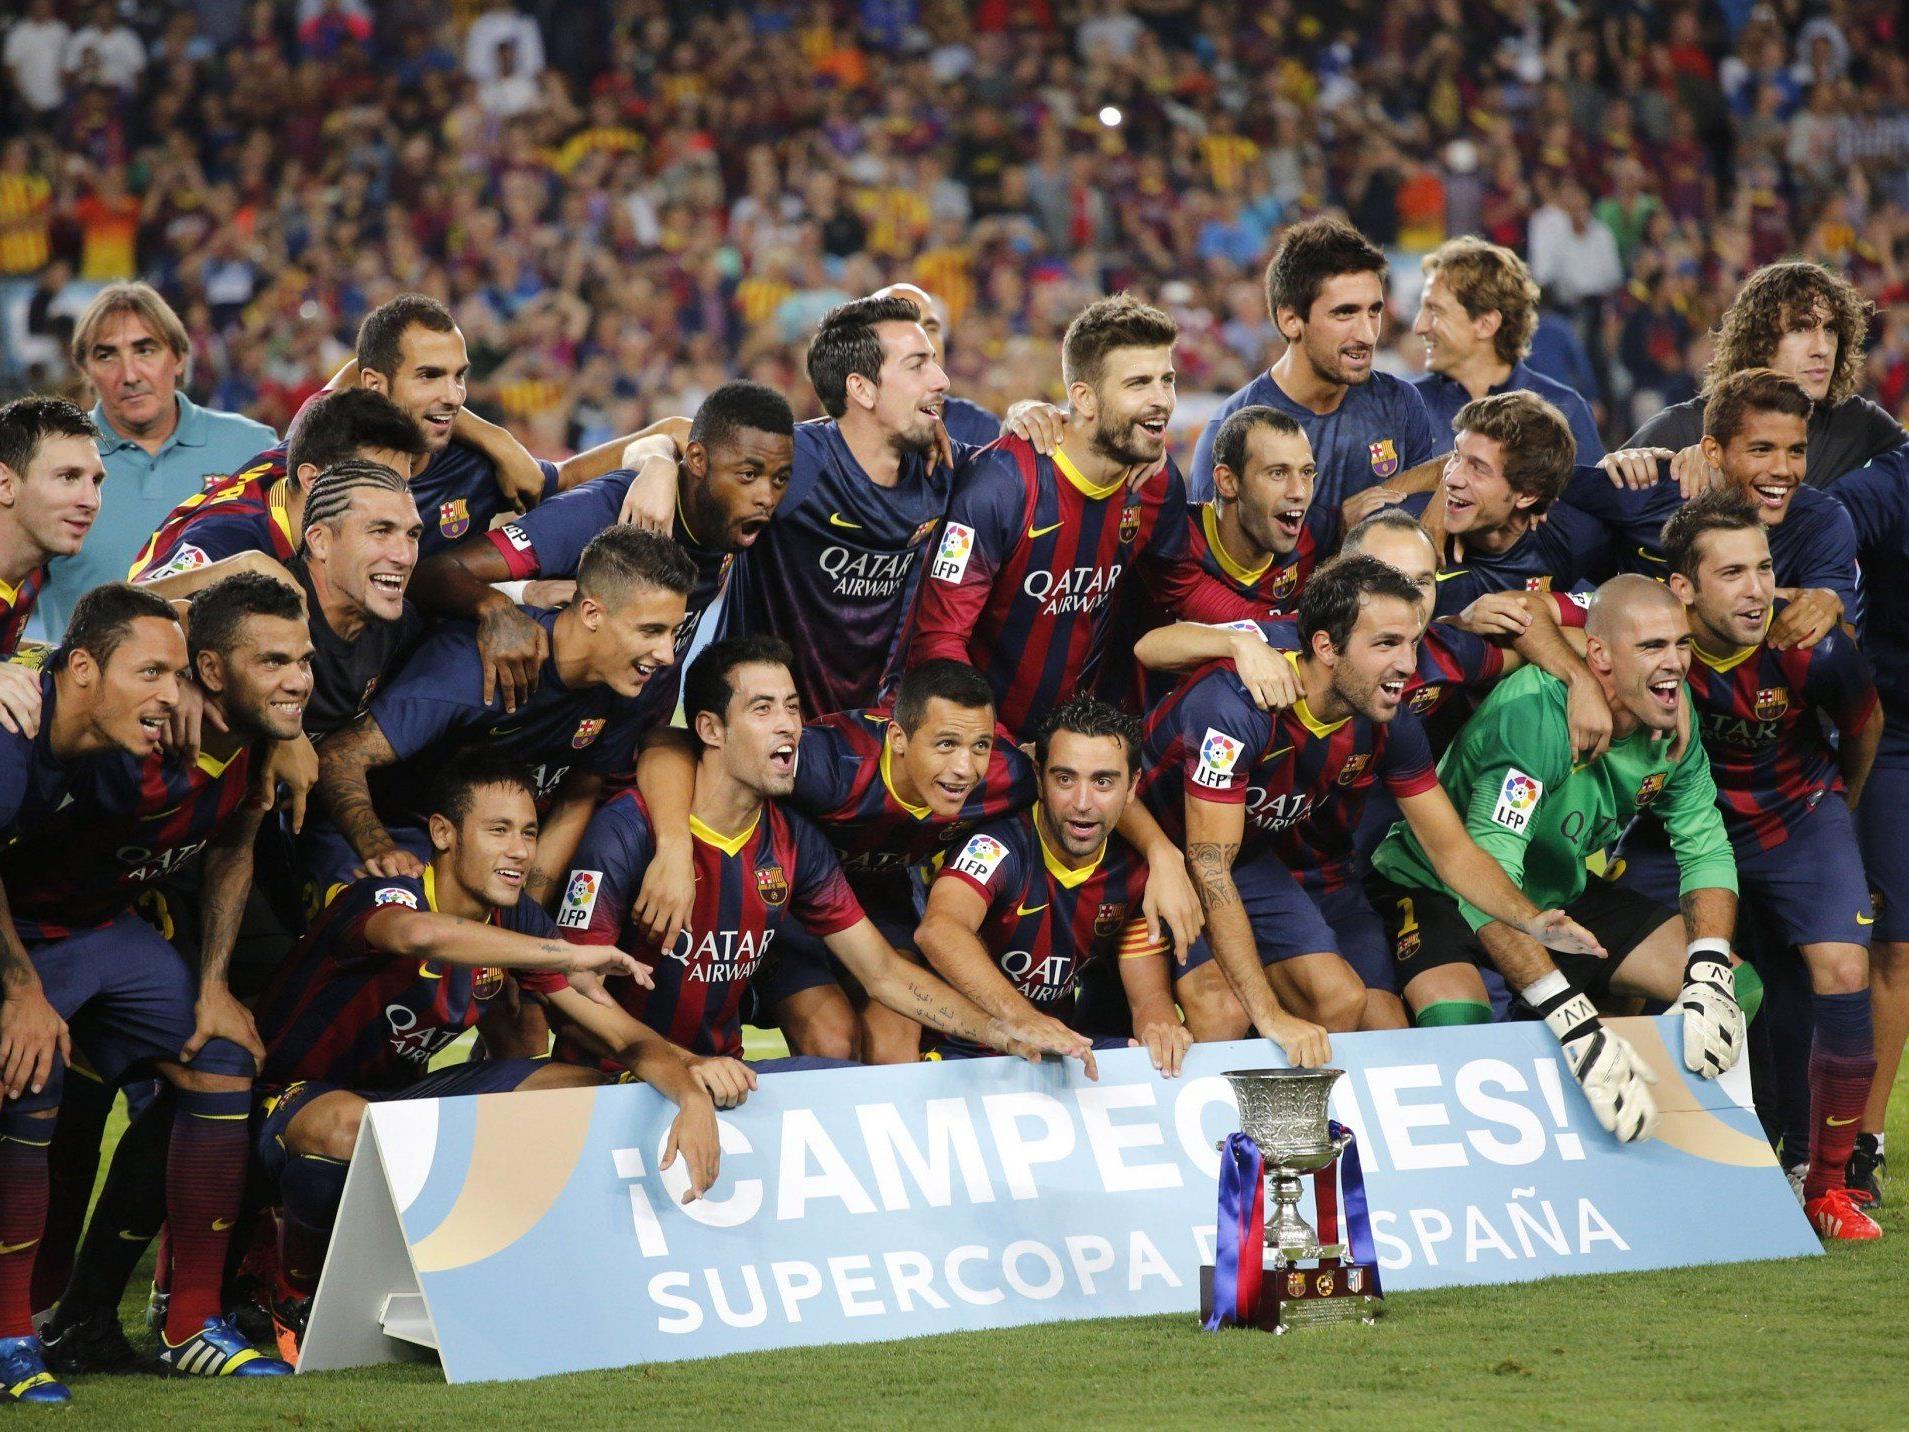 Der FC Barcelona konnte sich am Mittwoch zum elften Mal den spanischen Supercup sichern.